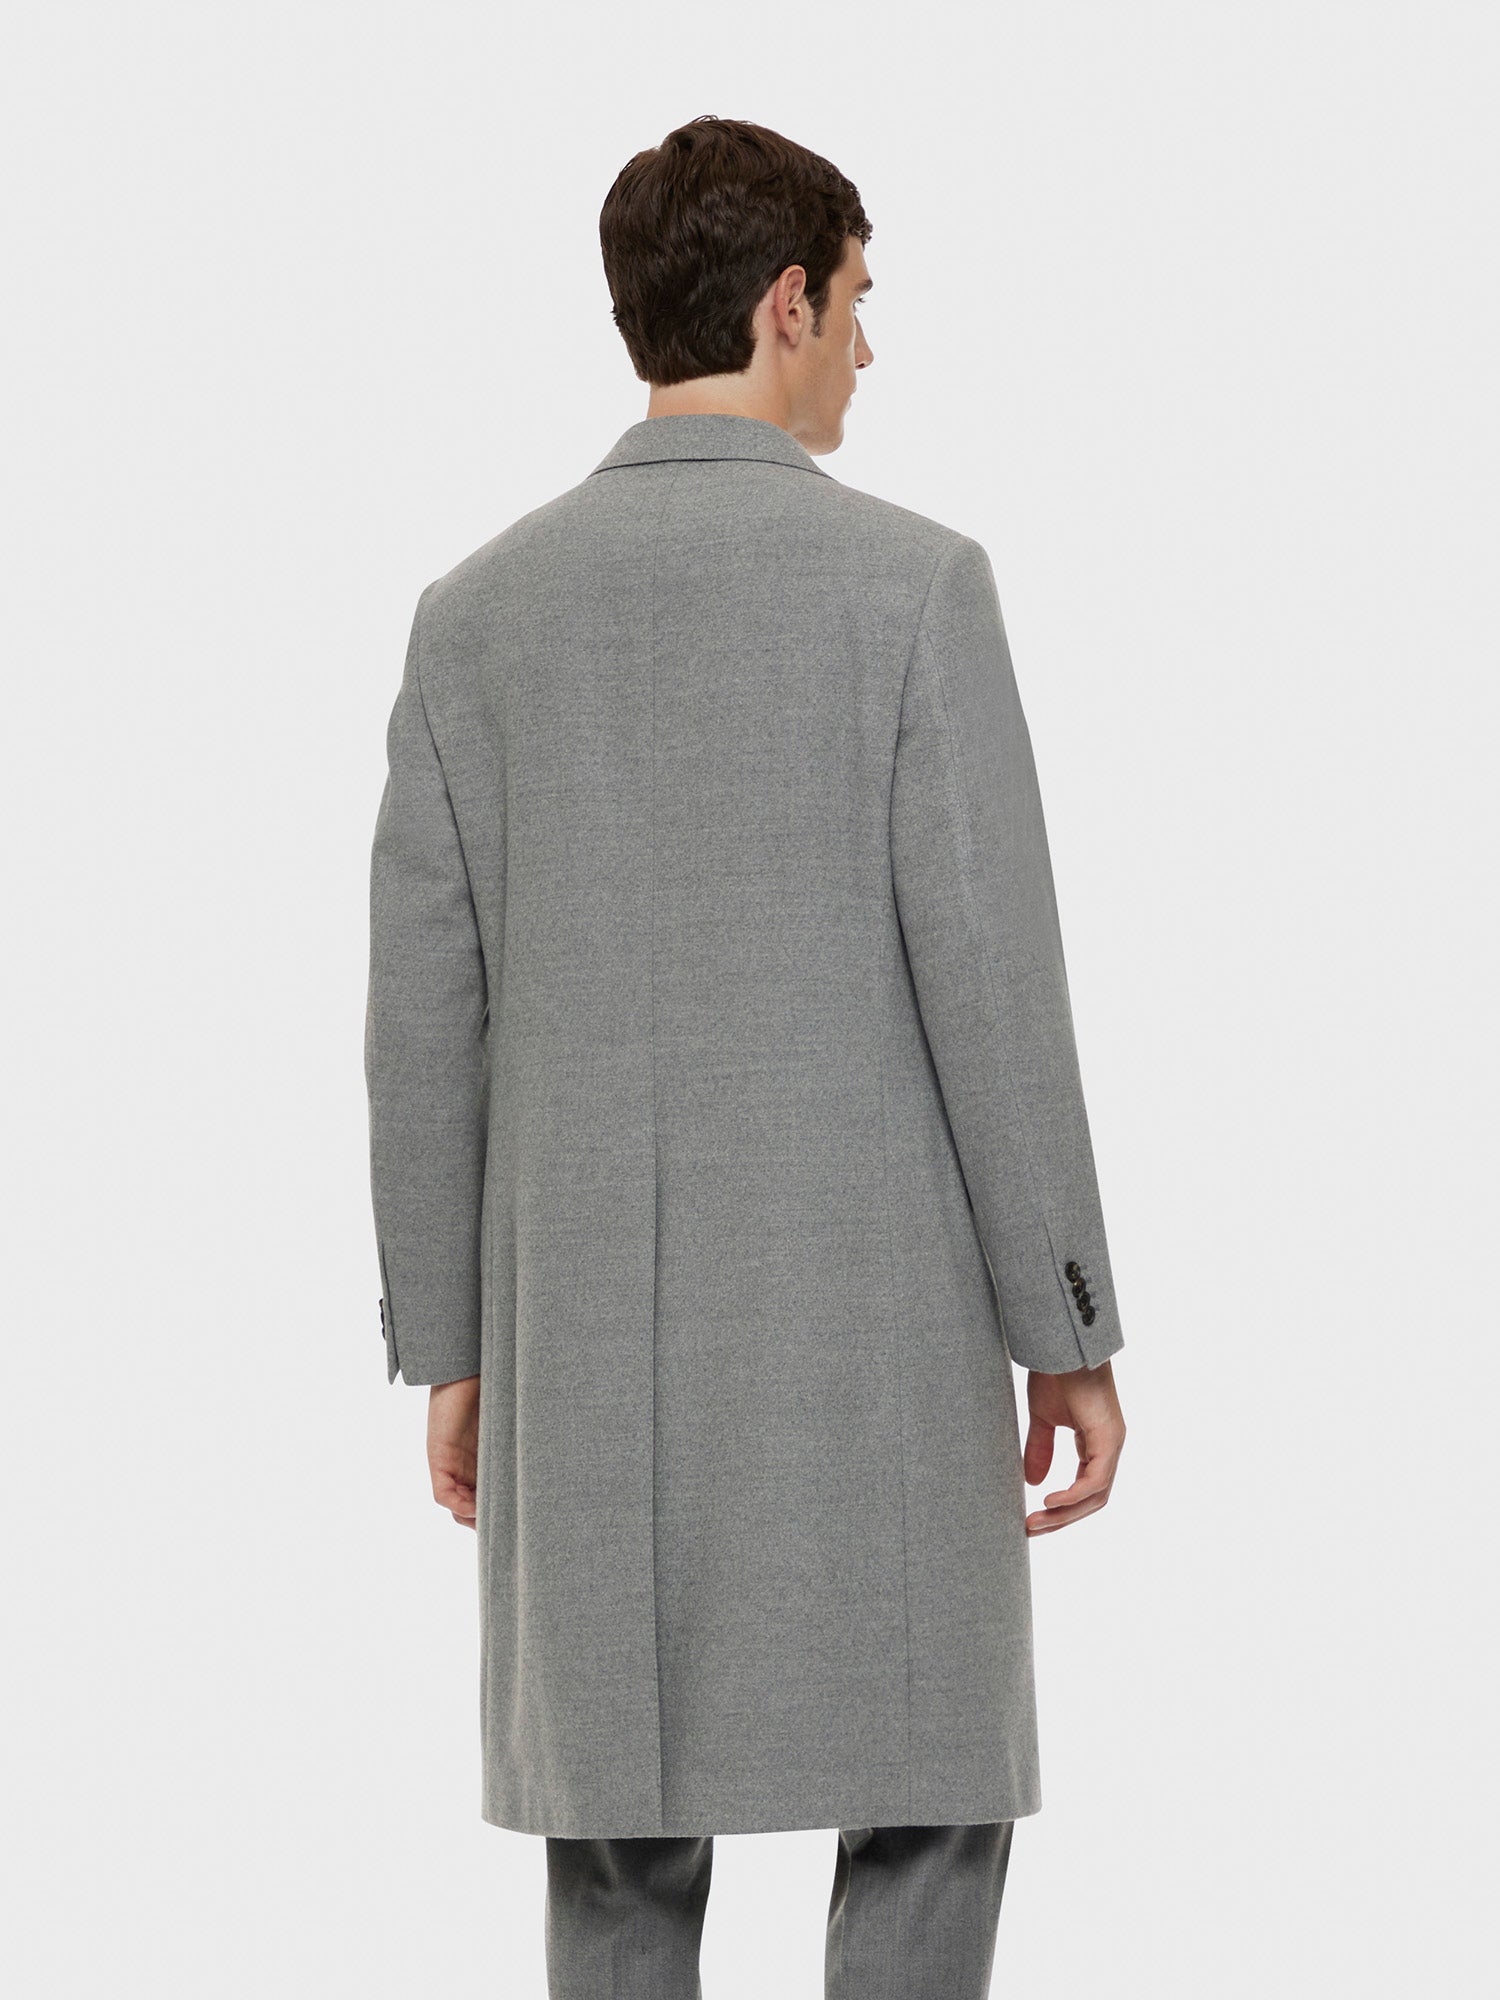 Caruso Menswear Abbigliamento Uomo Cappotto norma in lana "Nuage" 180's grigio indossato back